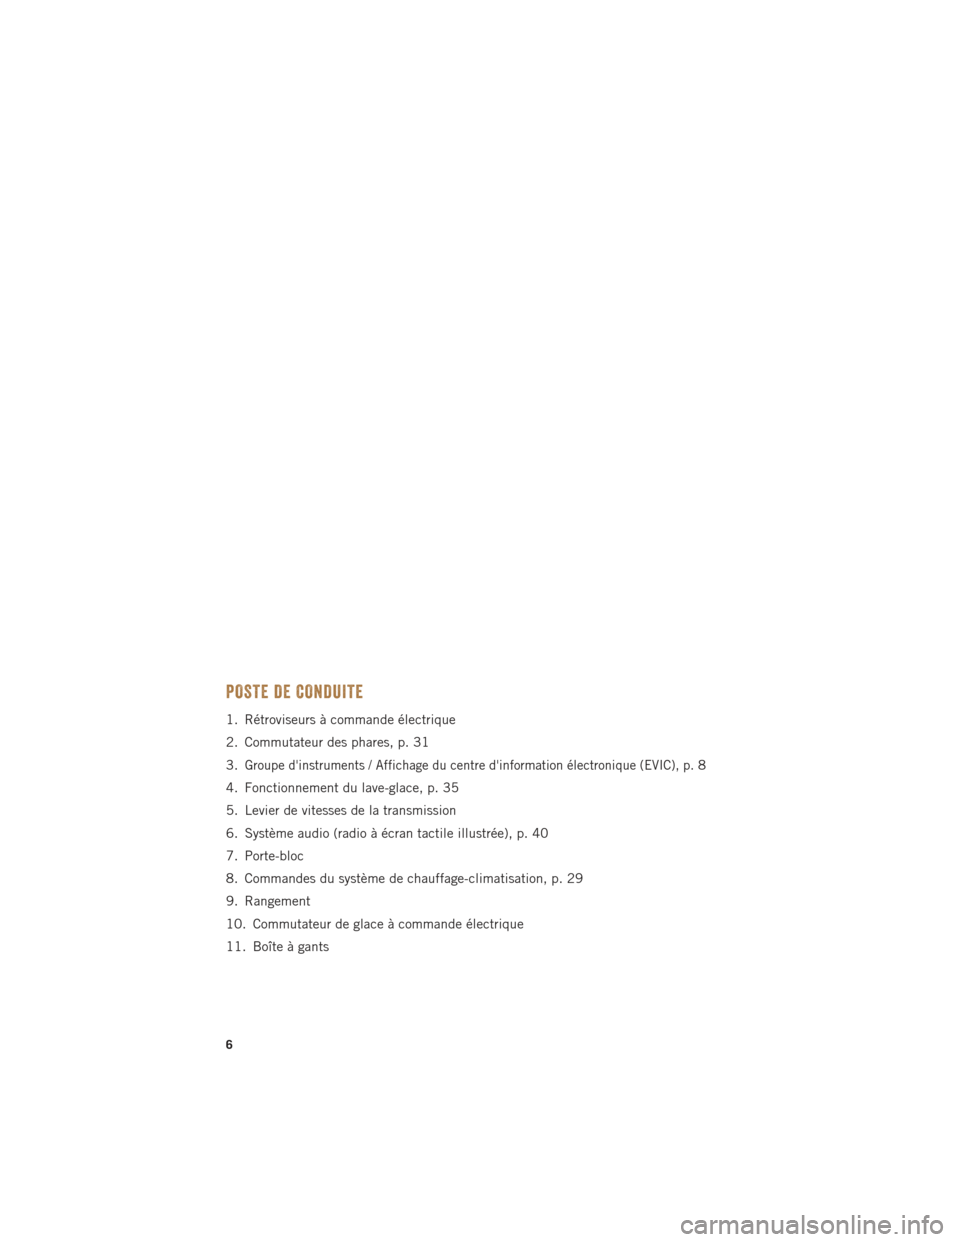 Ram ProMaster 2016  Guide dutilisateur (in French) POSTE DE CONDUITE
1. Rétroviseurs à commande électrique
2. Commutateur des phares, p. 31
3.
Groupe dinstruments / Affichage du centre dinformation électronique (EVIC), p.8
4. Fonctionnement du l